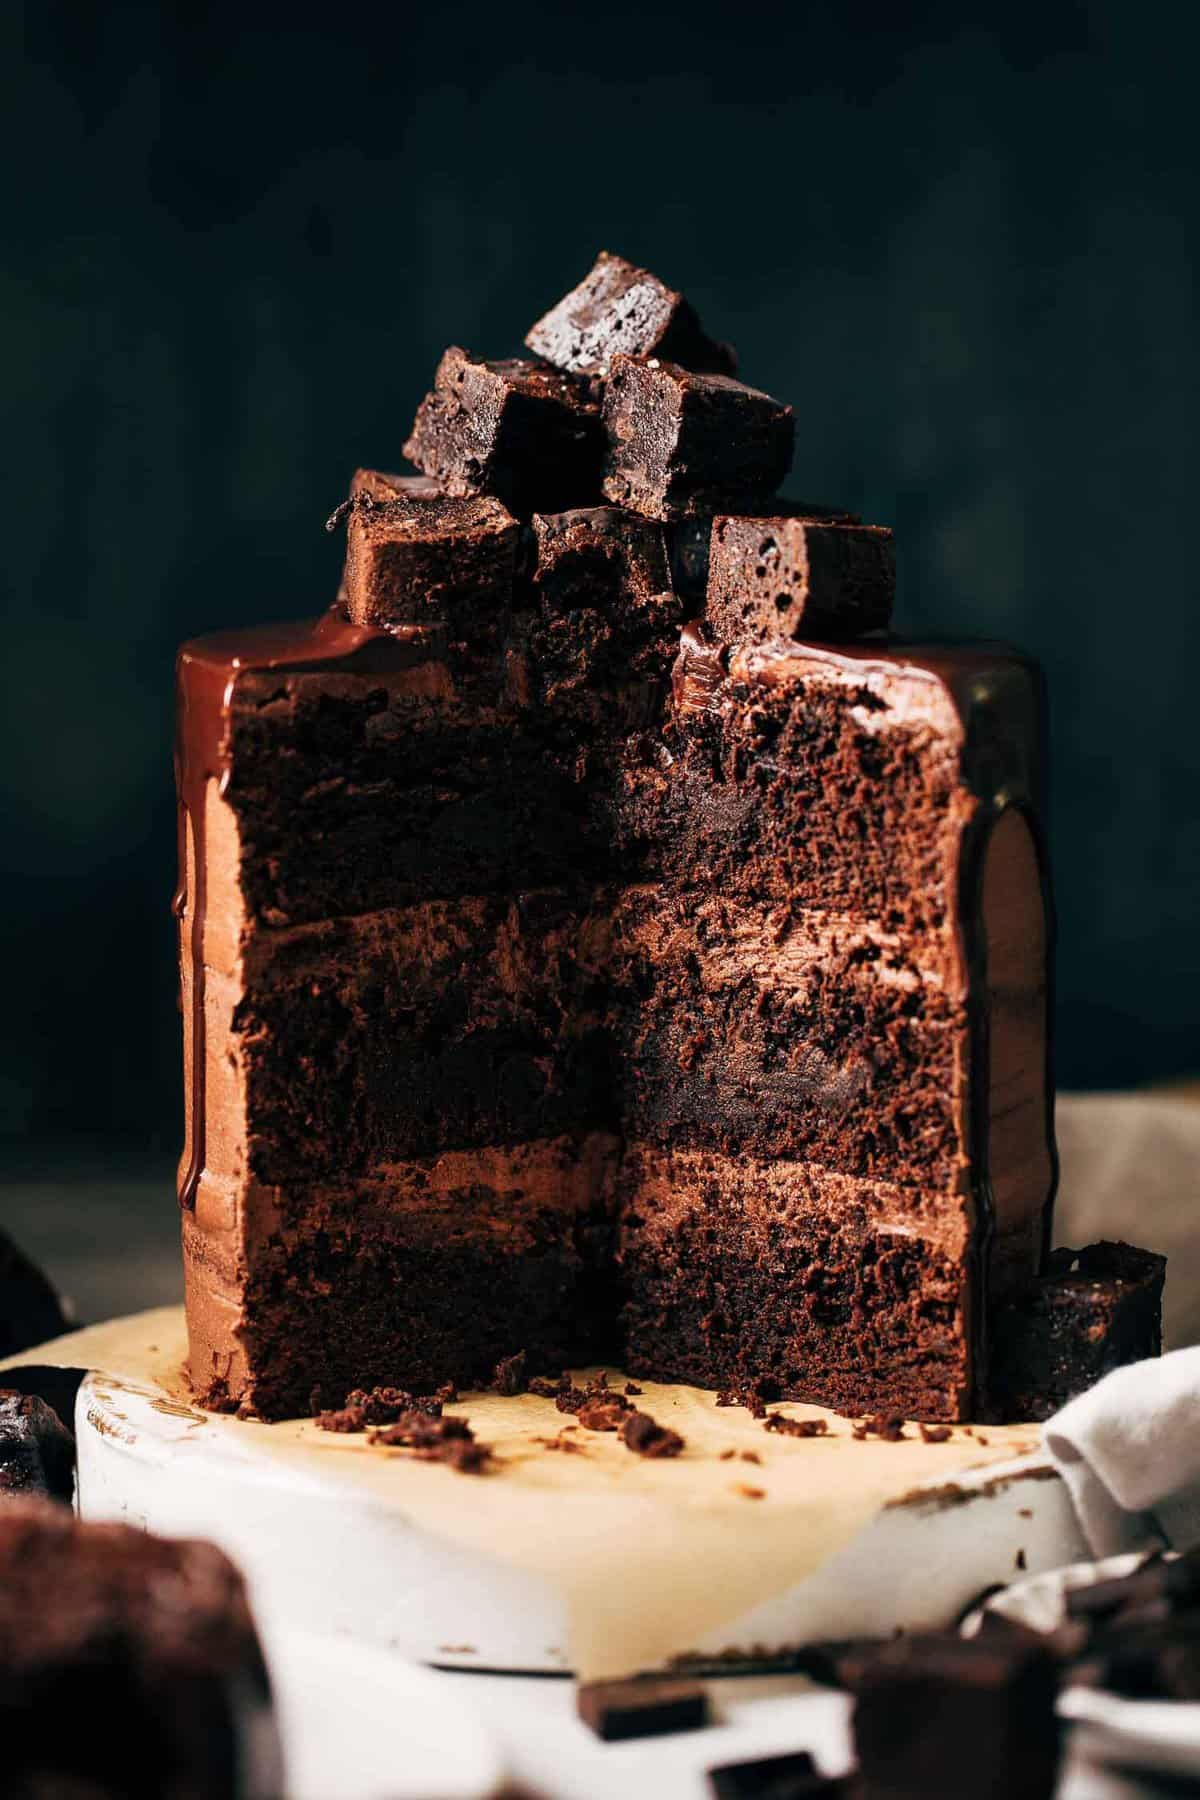 Chocolate cake decorating ideas - CakeFlix